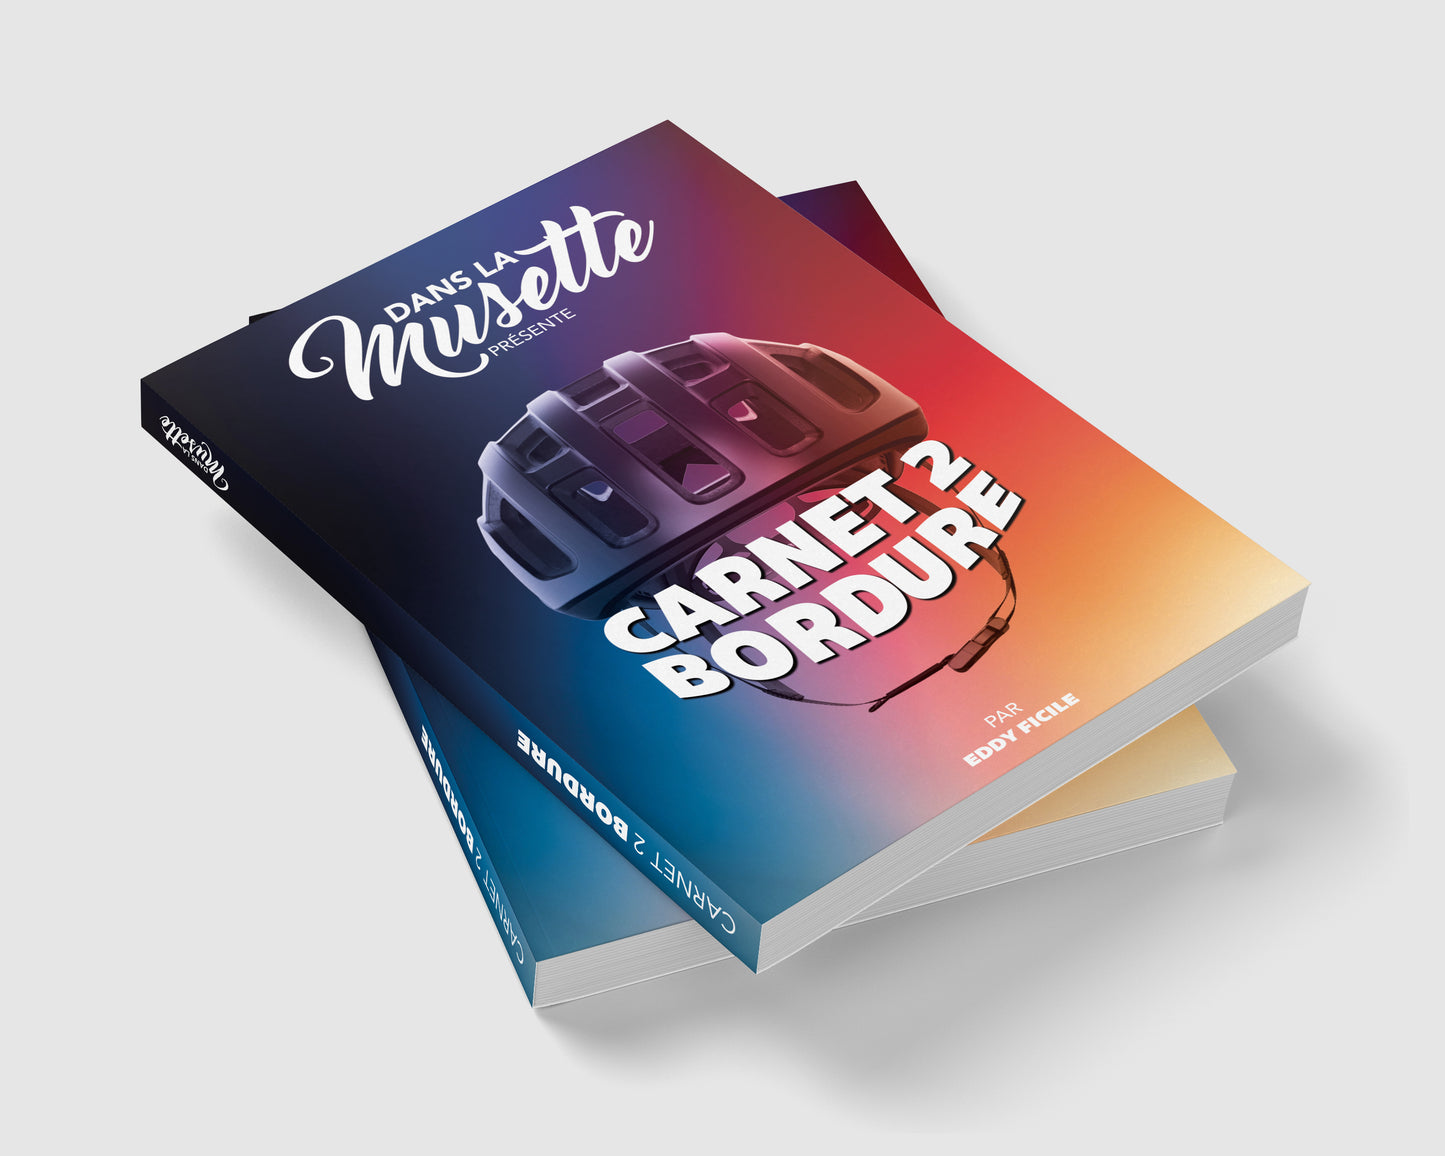 Carnet 2 Bordure - volume 2